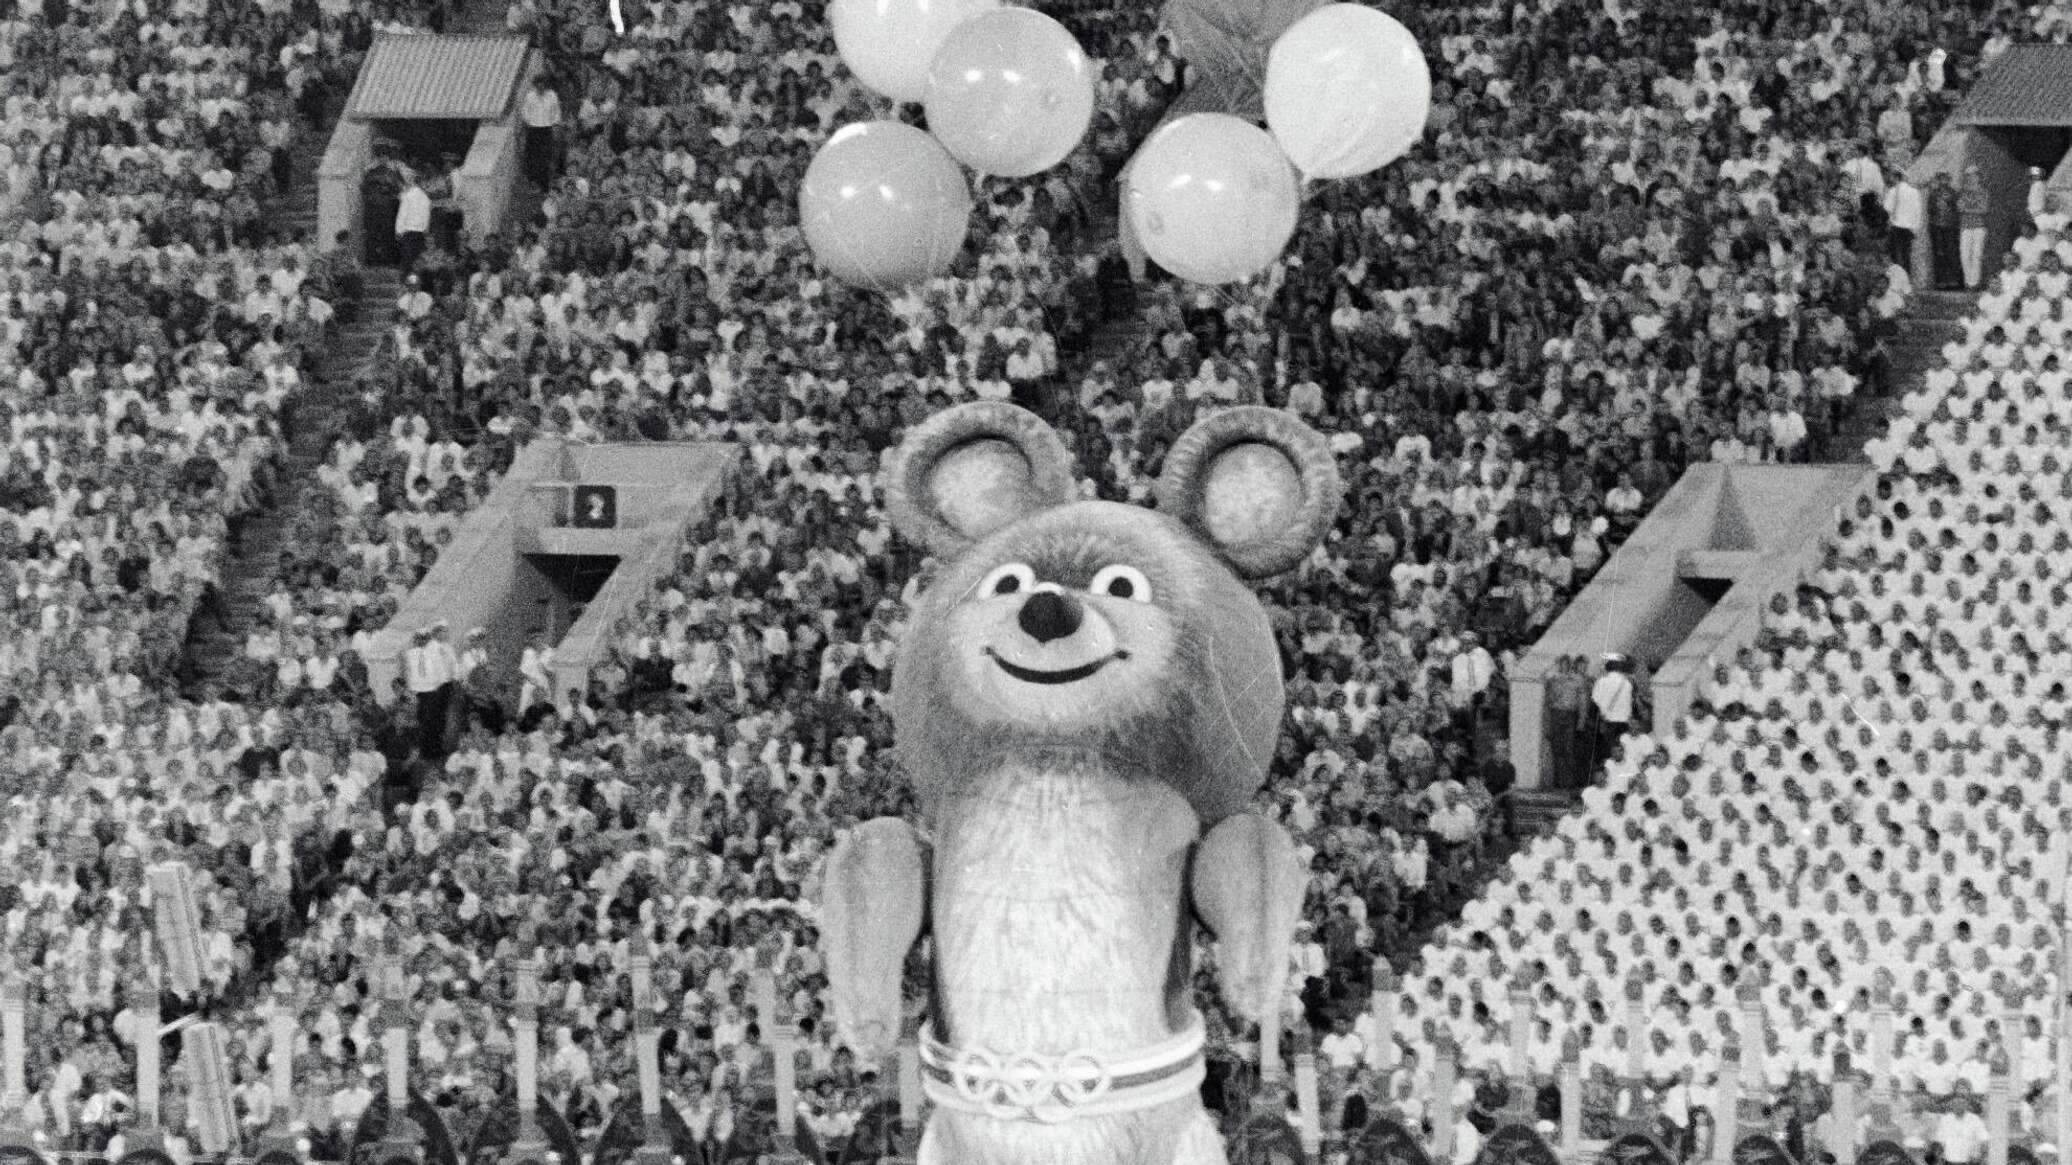 Неповторимая и вдохновляющая фигурка Олимпийского мишки, которая зарядит вас позитивной энергией и эстетическим наслаждением